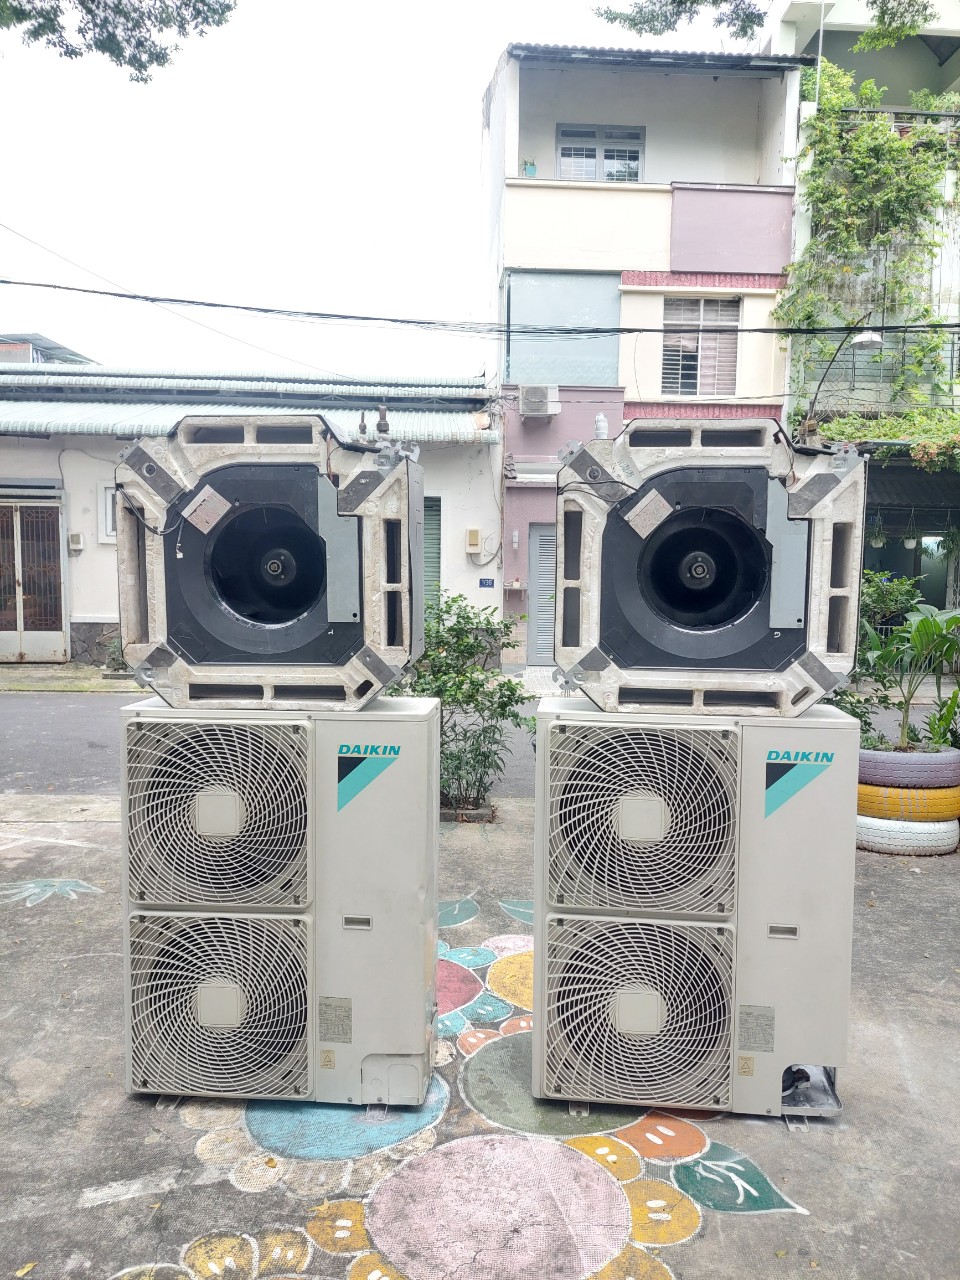 Bán máy lạnh cũ tại Bình Phước✔️ 0907 243 680 Mr.Bảo | Các máy lạnh nội địa Nhật cũ của Chuyên bán máy lạnh cũ được lựa chọn cẩn thẩn, đảm bảo chất lượng tốt nhất đến tay các gia đình ở thành phố Hồ Chí Minh.